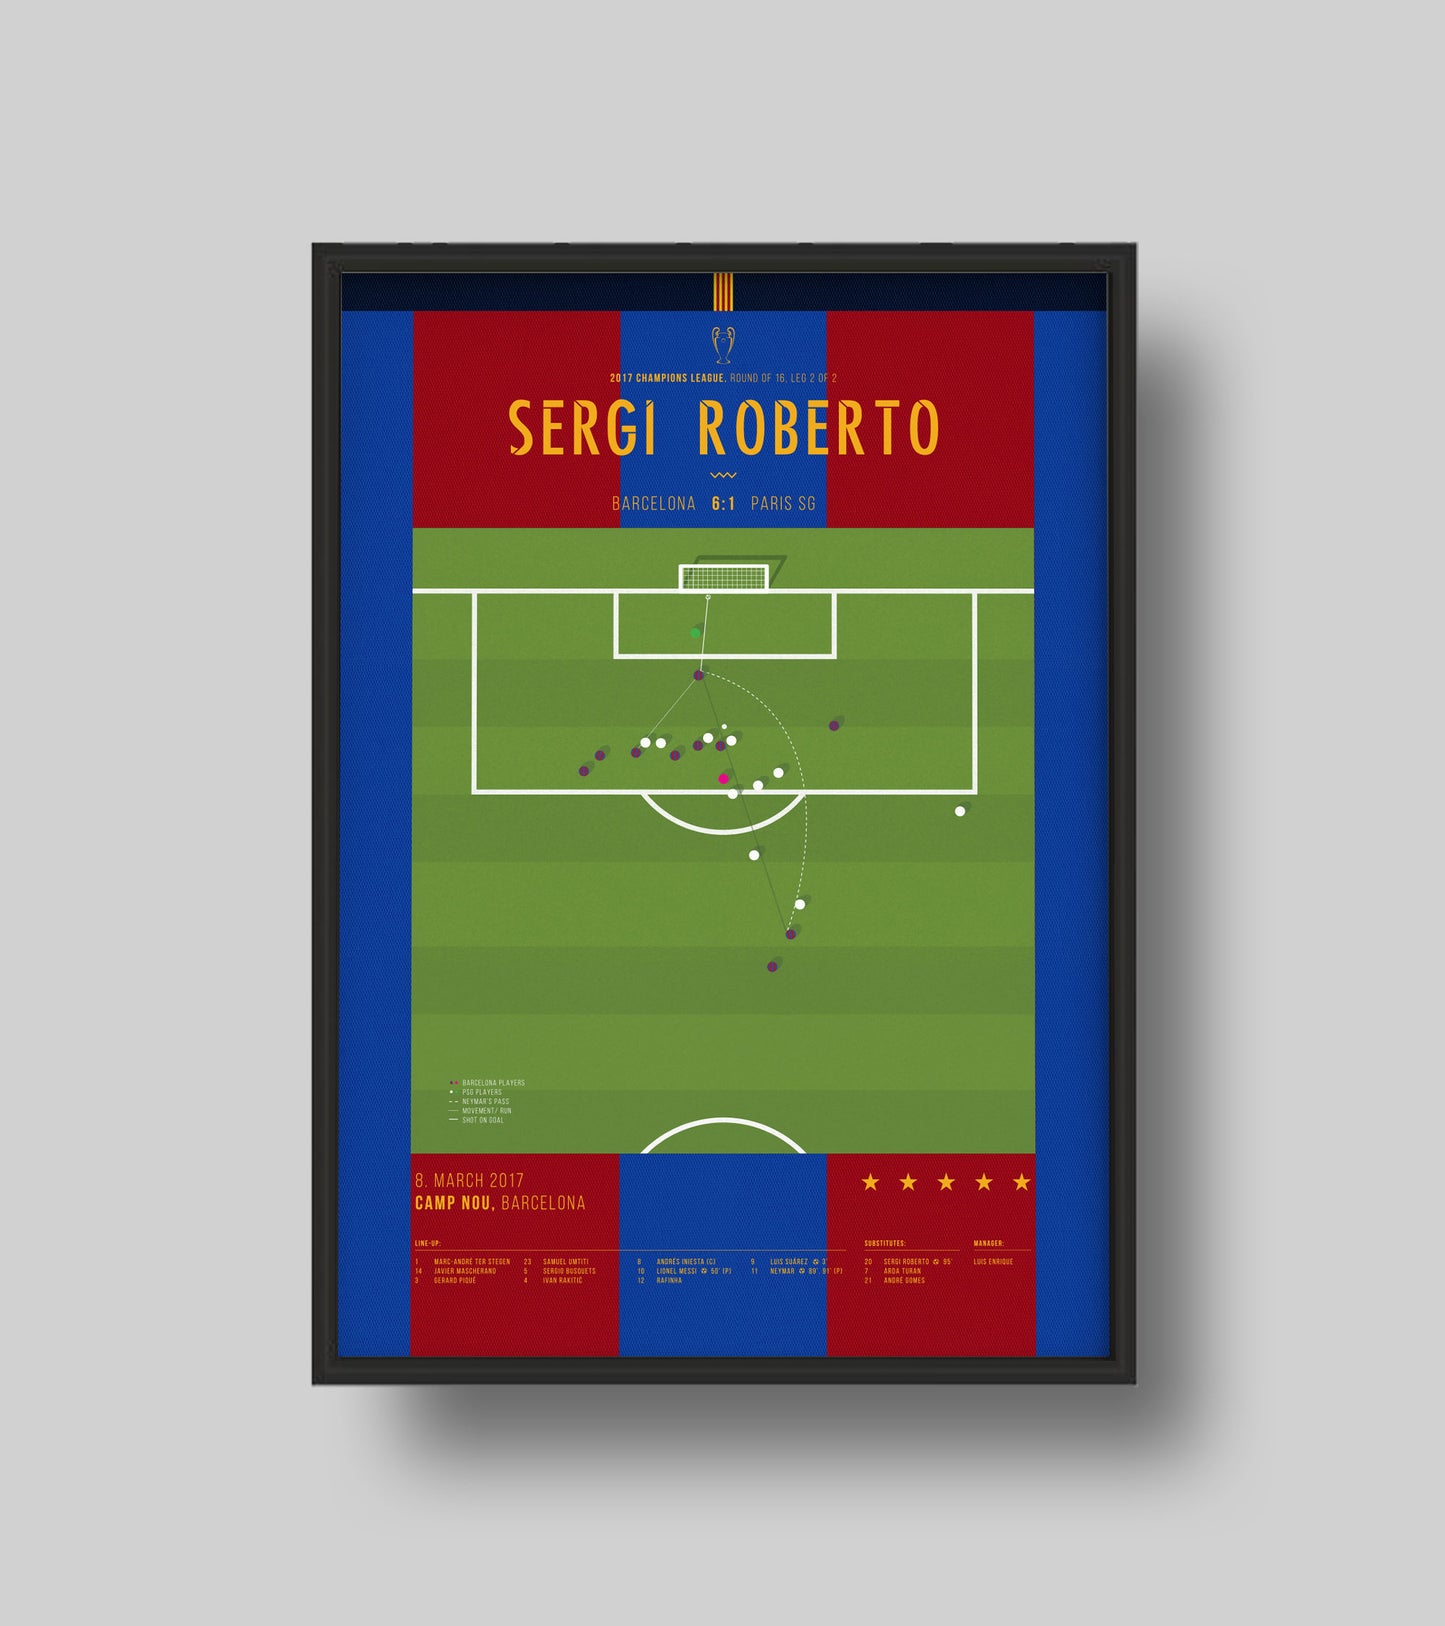 Sergi Roberto scores to complete historic Barcelona comeback